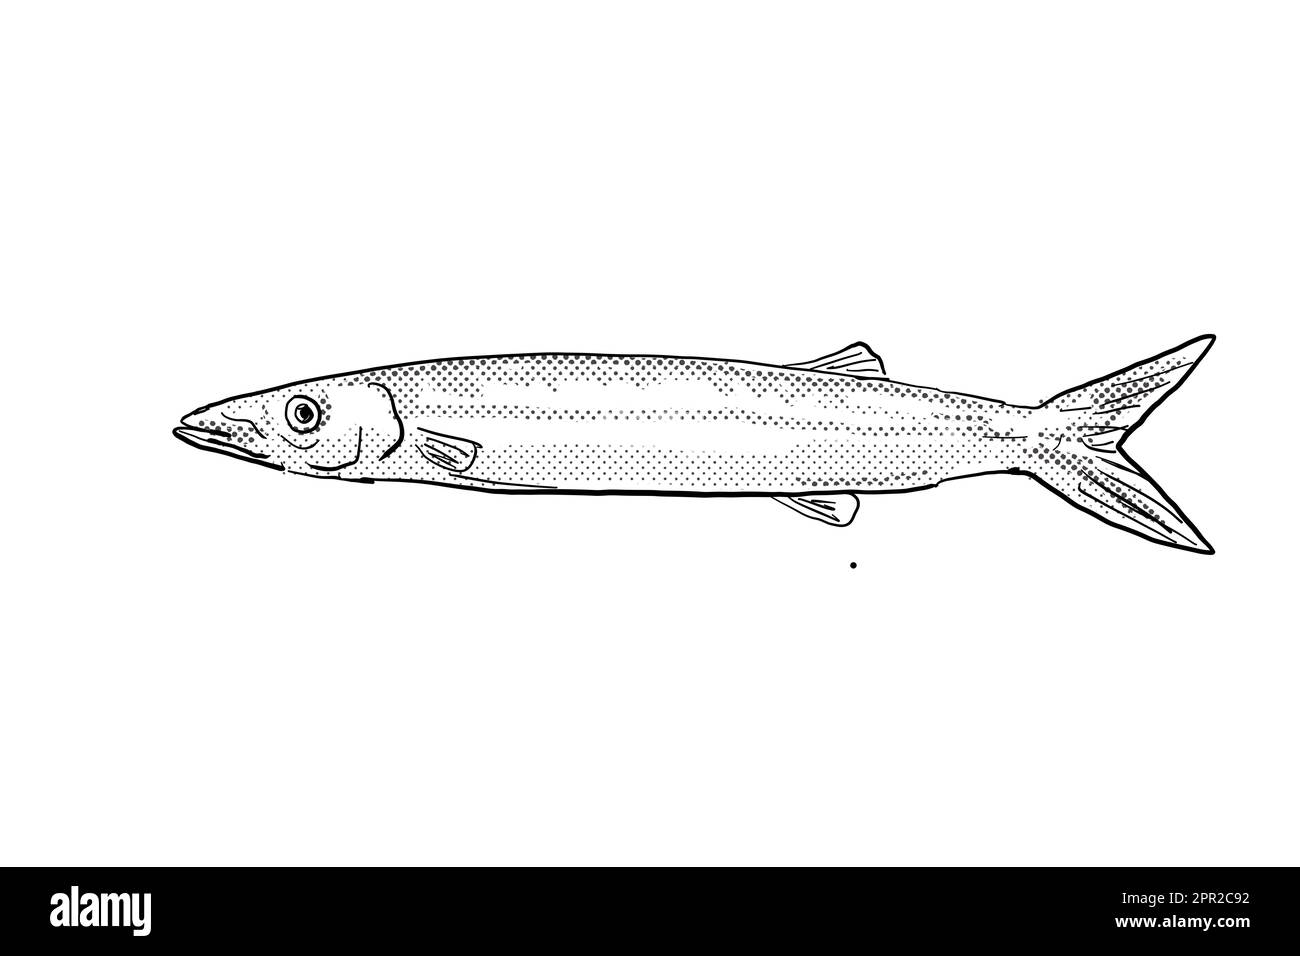 Dessin de style caricaturé d'un barracuda japonais Sphyraena japonica poisson endémique à Hawaï et archipel hawaïen avec des points de demi-teinte sur Banque D'Images